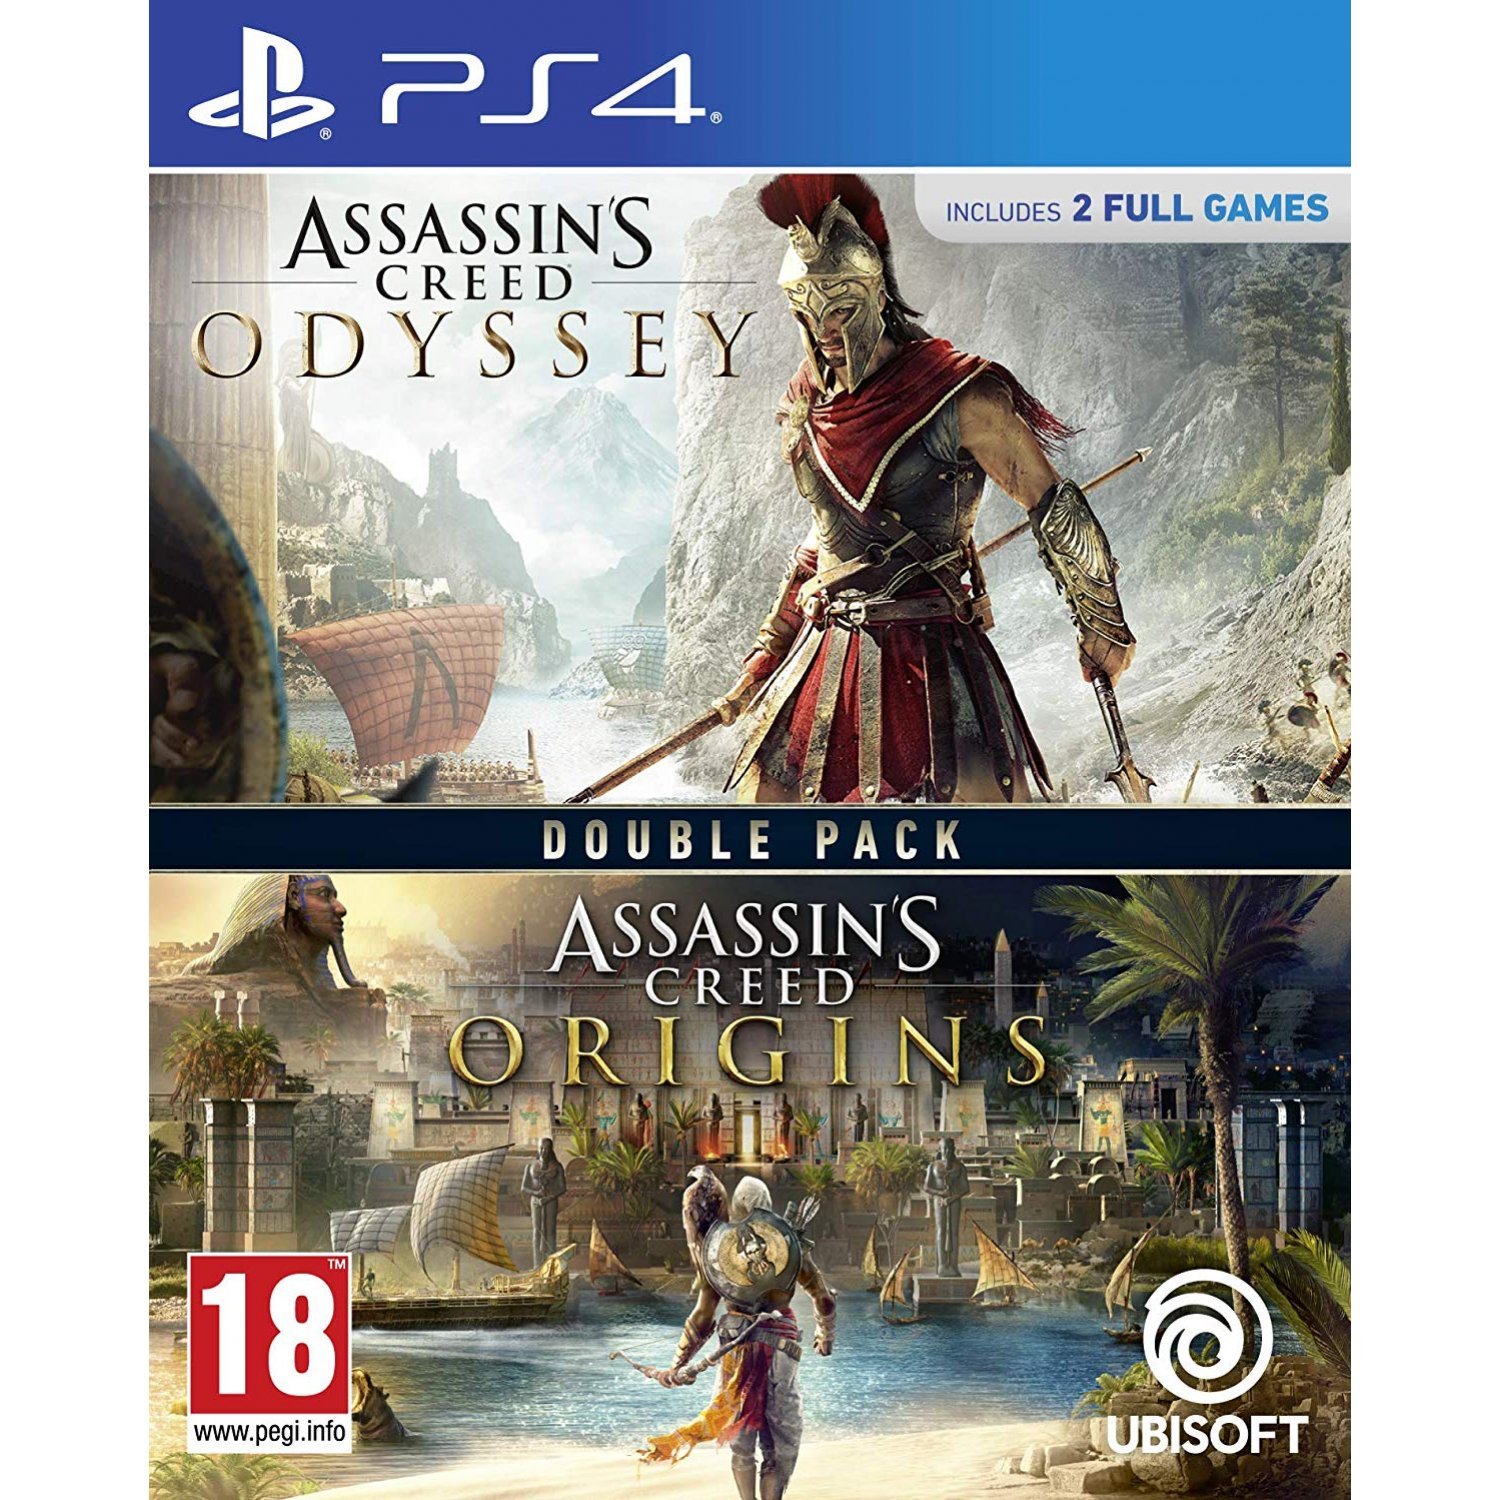 Assassin's Creed Origins & Odyssey, Ubi Soft